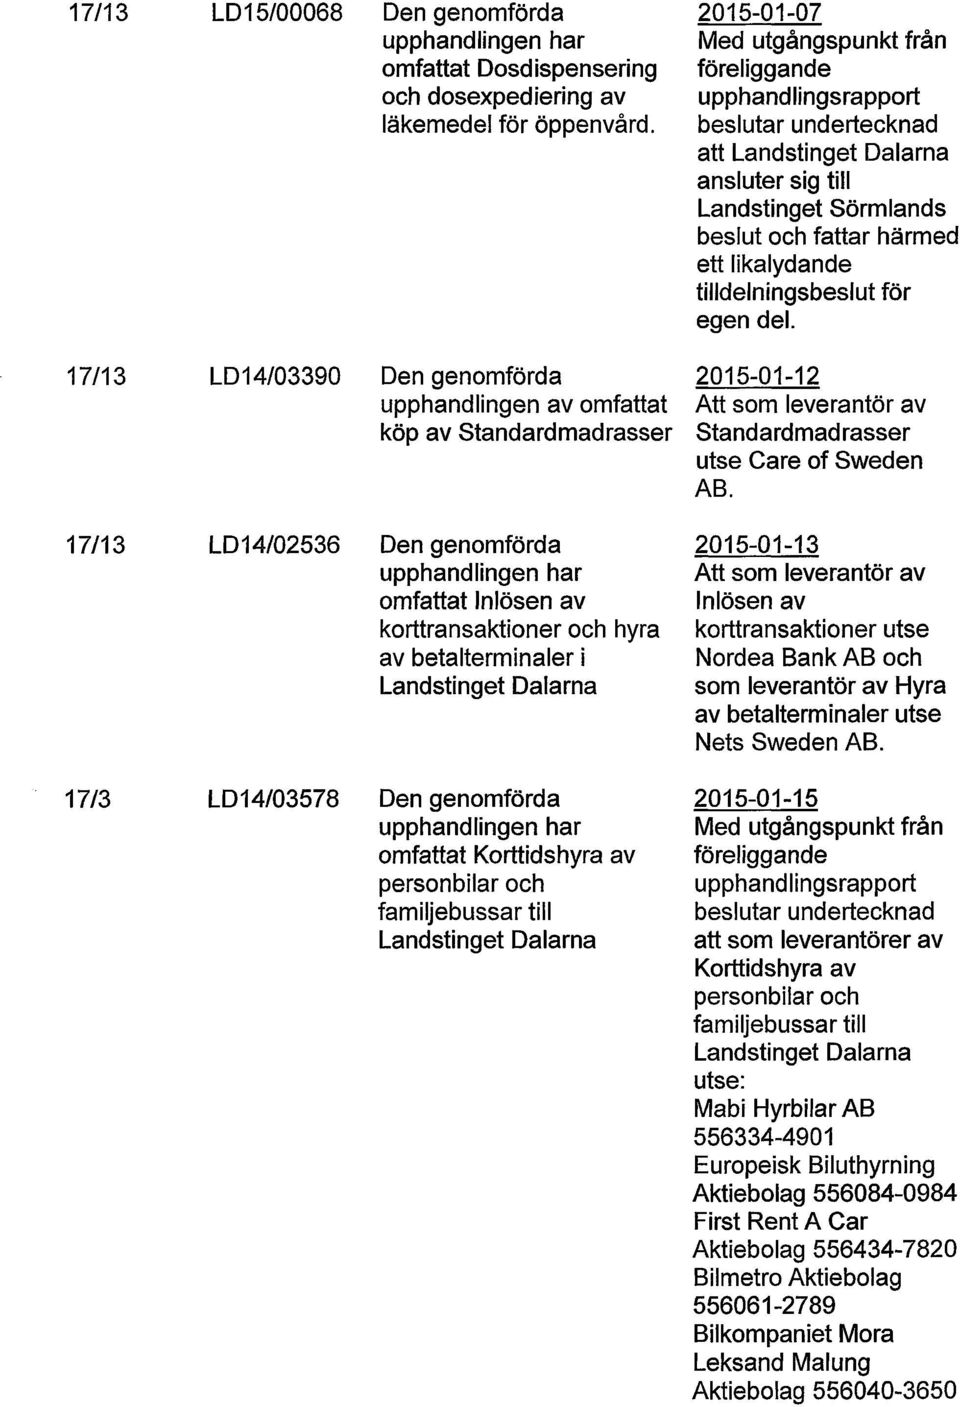 egen del. LD14/03390 upphandlingen av omfattat köp av Standardmadrasser 2015-01-12 Att som leverantör av Standardmadrasser utse Care of Sweden AB.